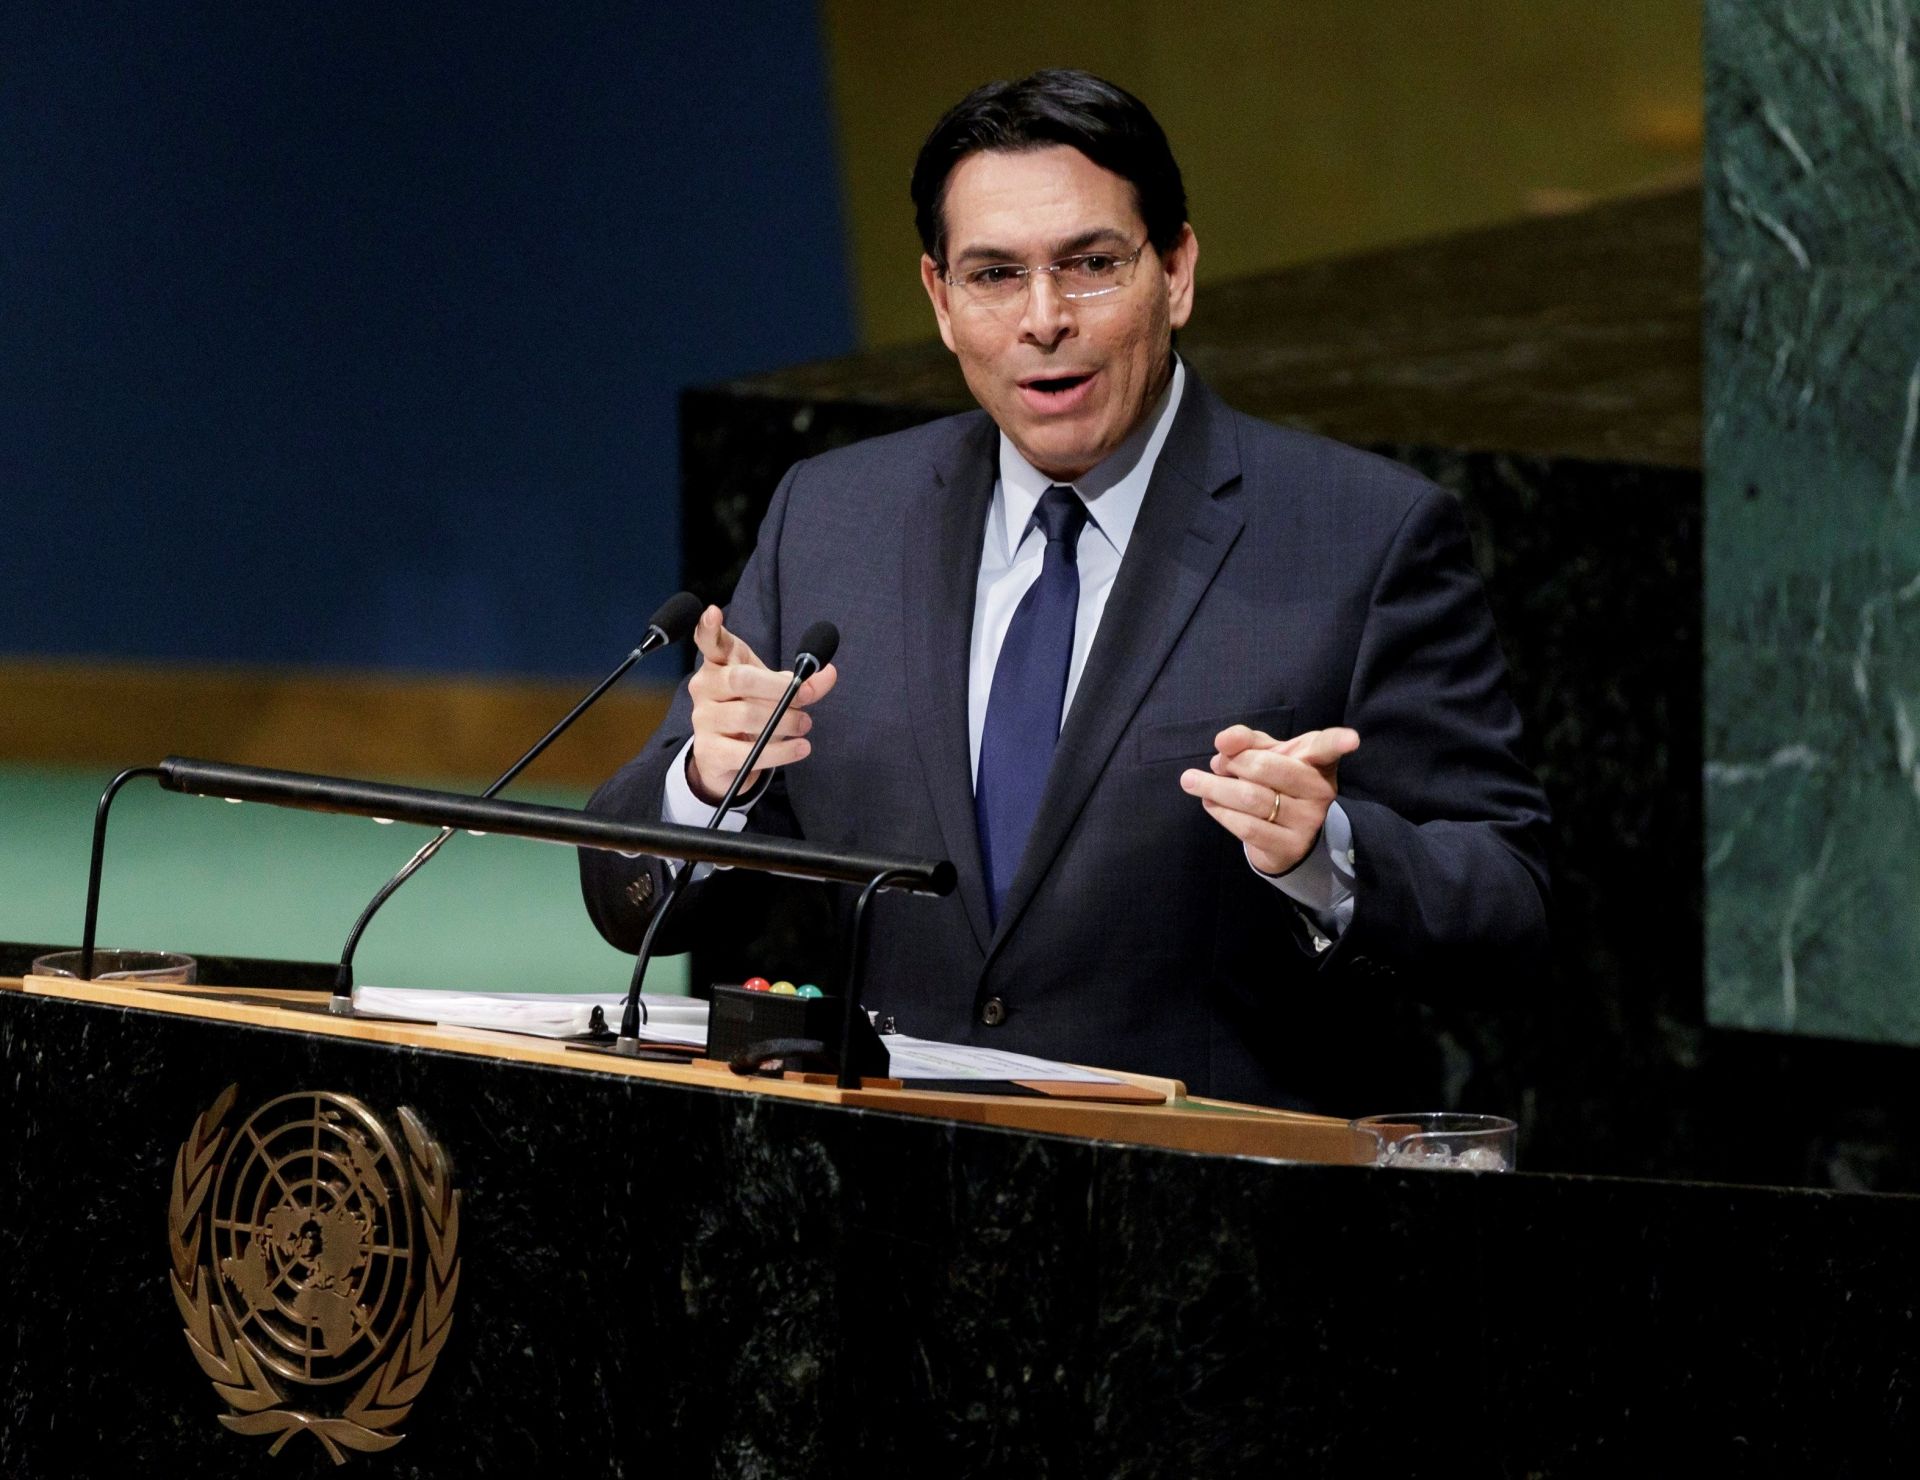  El embajador israelí en la ONU, Danny Danon, interviene antes la votación de una resolución crítica en la Asamblea General de la ONU, en la sede de las Naciones Unidas en Nueva York (Estados Unidos) hoy, 21 de diciembre de 2017